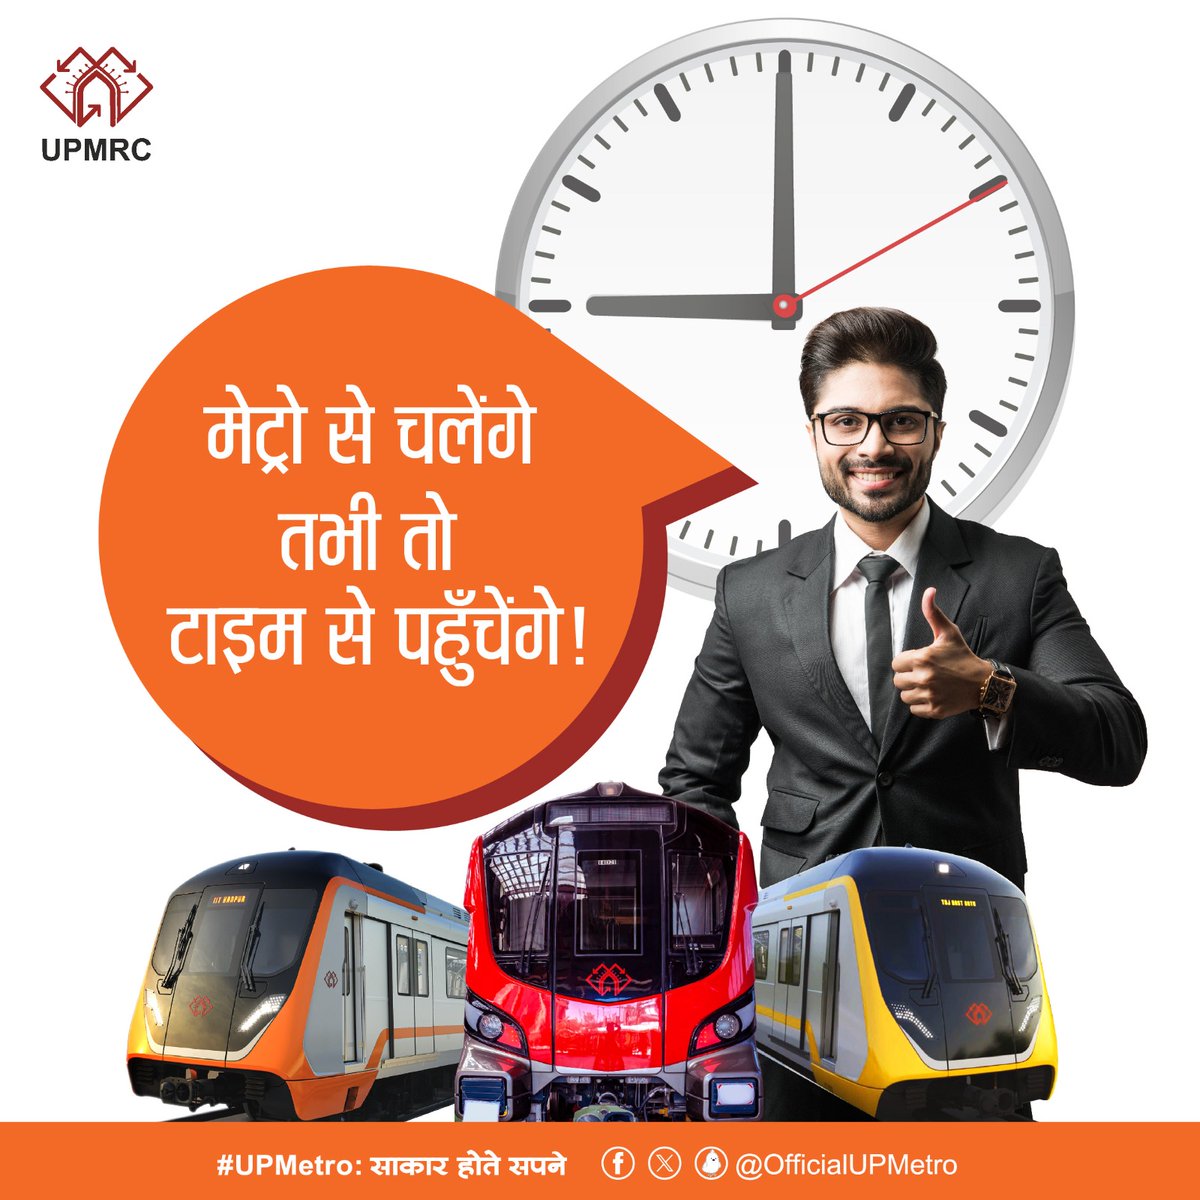 मेट्रो से चलेंगे तभी तो टाइम से पहुँचेंगे! #UPMetro:साकारहोतेसपने #LucknowMetro #KanpurMetro #AgraMetro